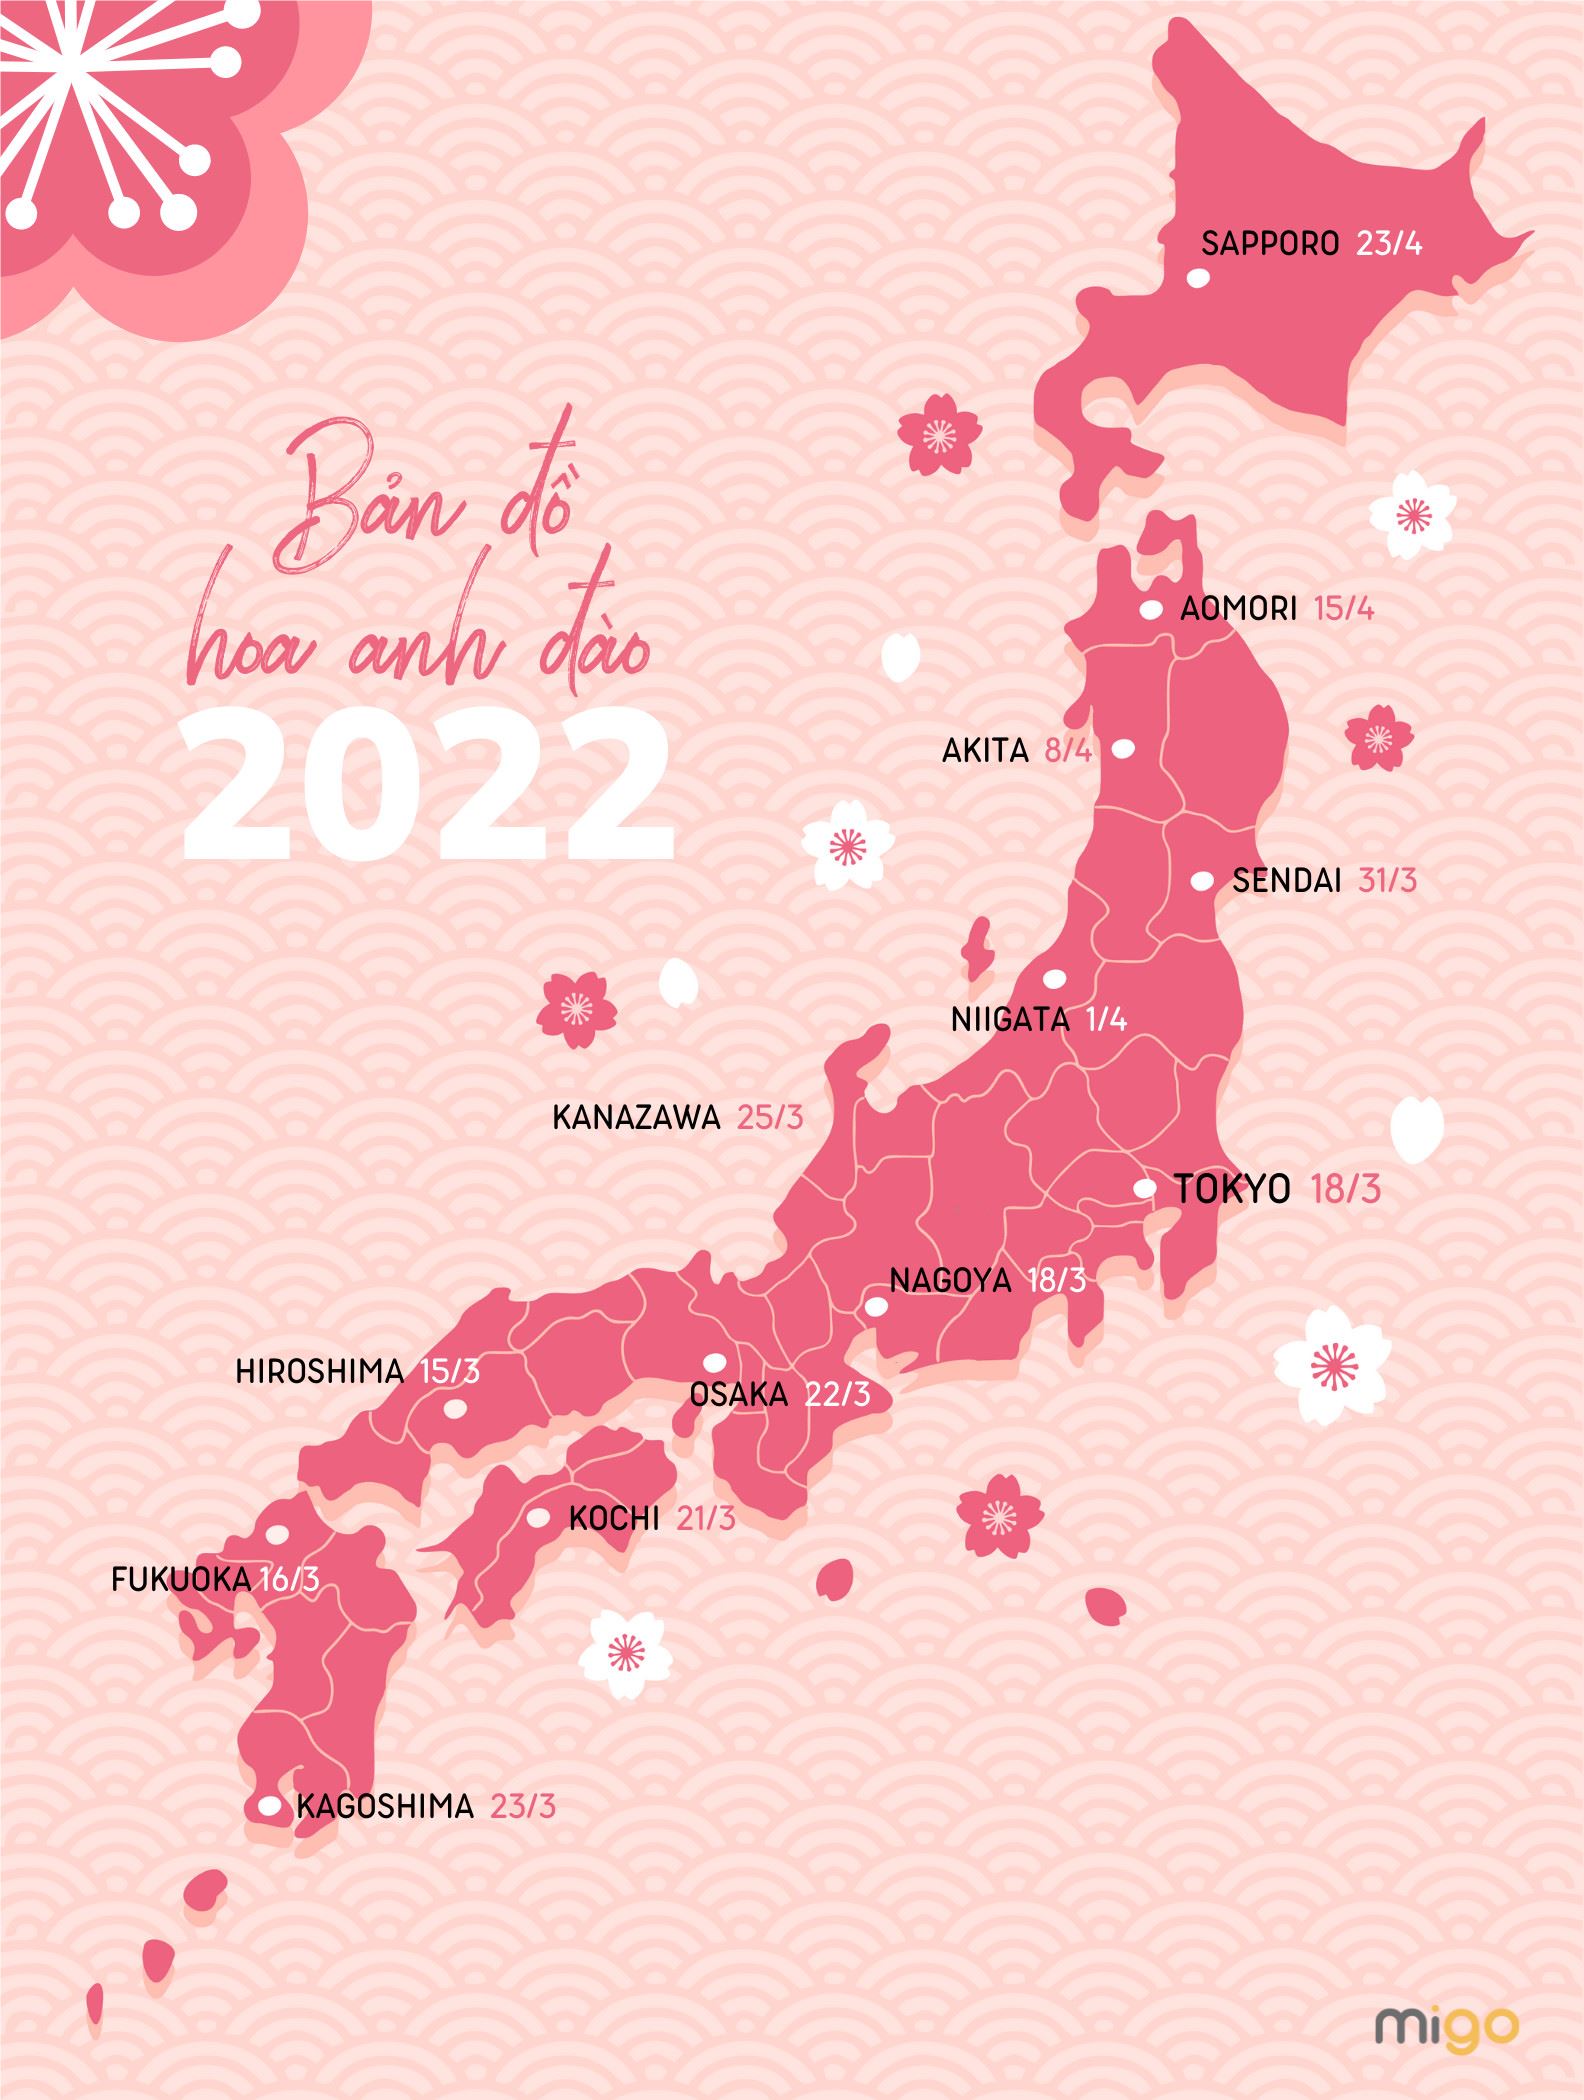 Nếu bạn muốn khám phá vẻ đẹp đặc biệt của những cánh hoa mỏng manh này, hãy xem bản đồ hoa anh đào Nhật Bản. Tìm hiểu về những khu vực có hoa anh đào đẹp nhất và tham quan những chủ đề hoa tuyệt đẹp. Đi bộ dọc theo đường phố và cảm nhận vẻ đẹp độc đáo của mùa xuân Nhật Bản!